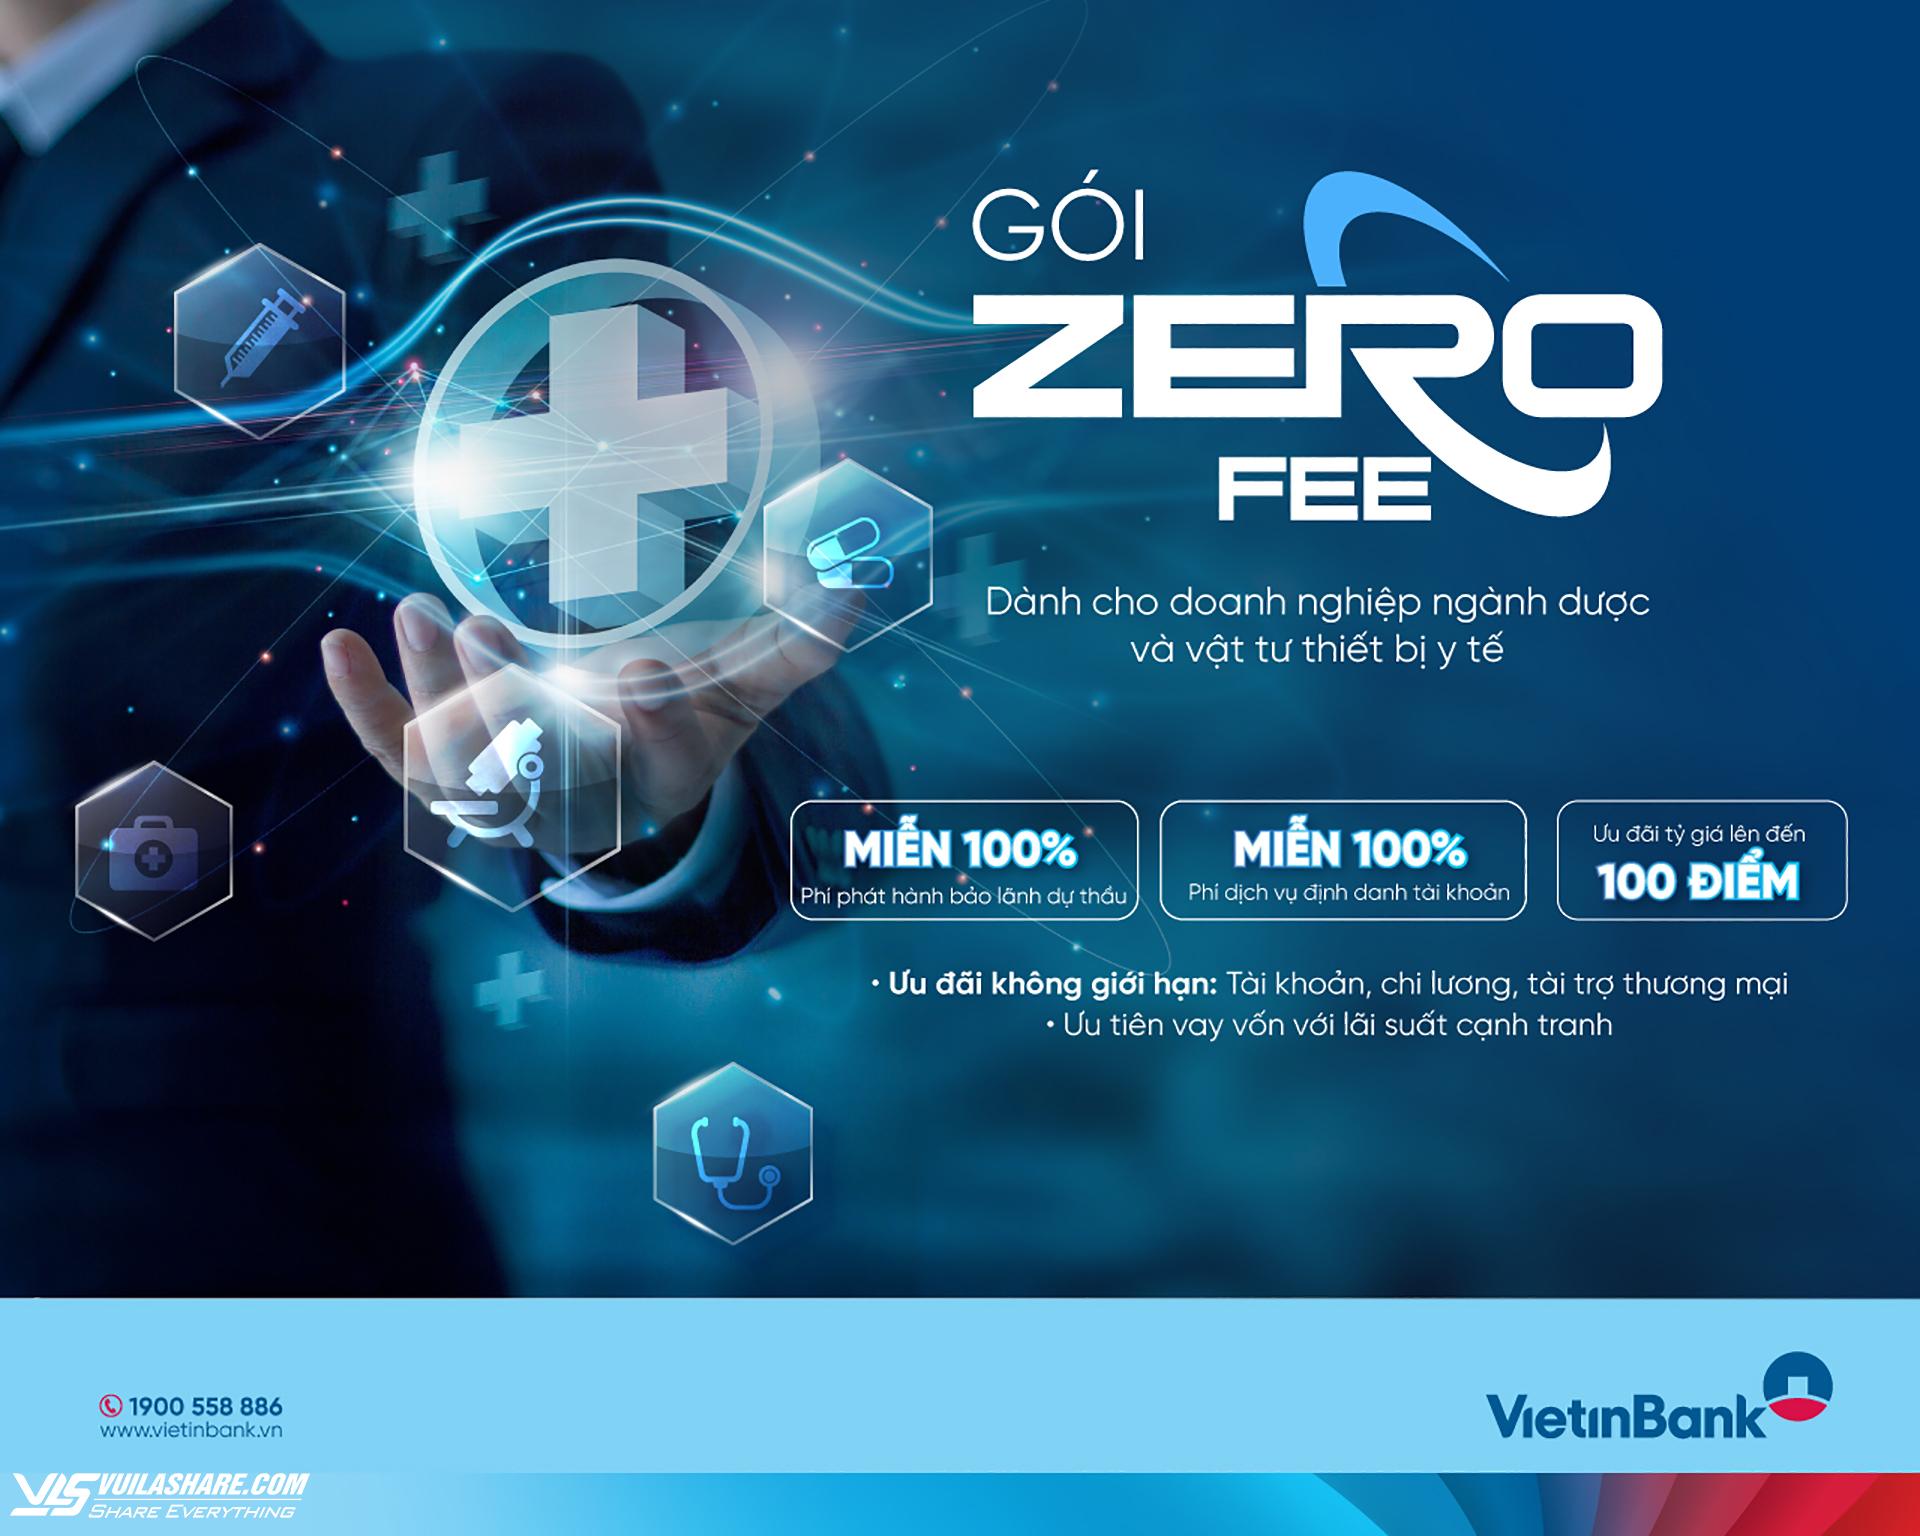 VietinBank tung gói ưu đãi phí ‘Zero Fee’ dành cho doanh nghiệp ngành dược- Ảnh 1.